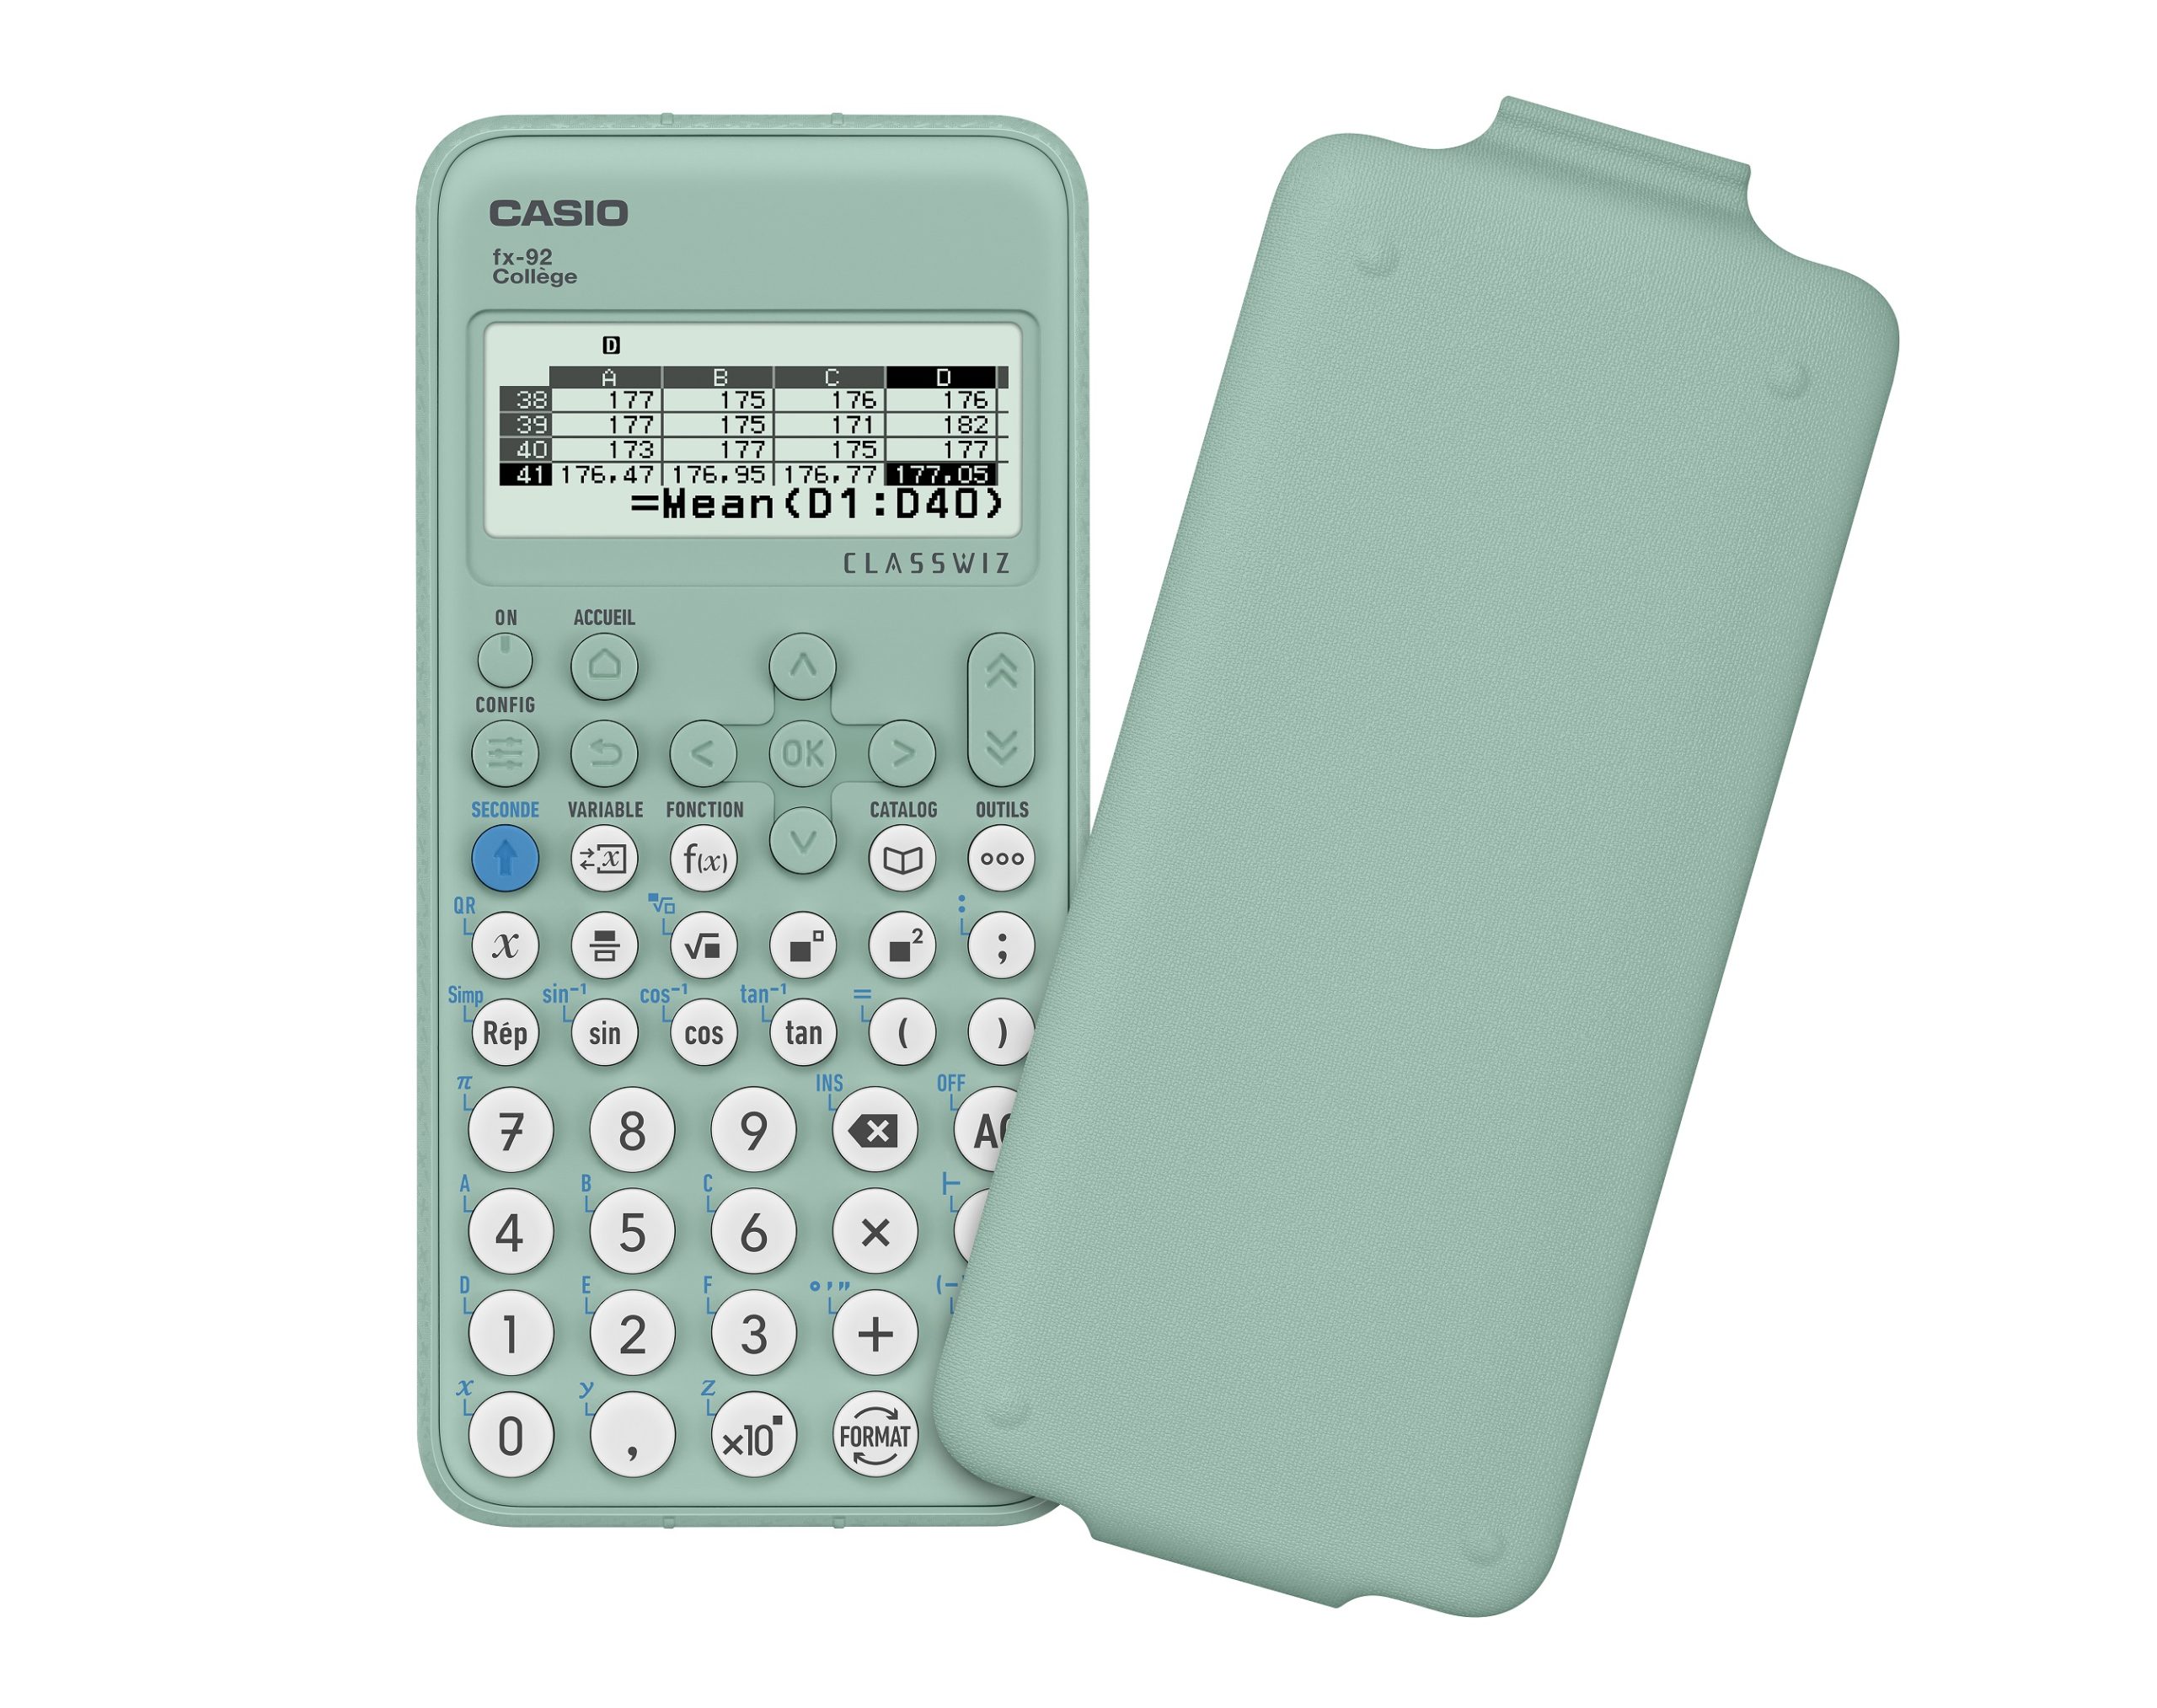 CASIO College FX-200P – Le Rayon des Calculatrices